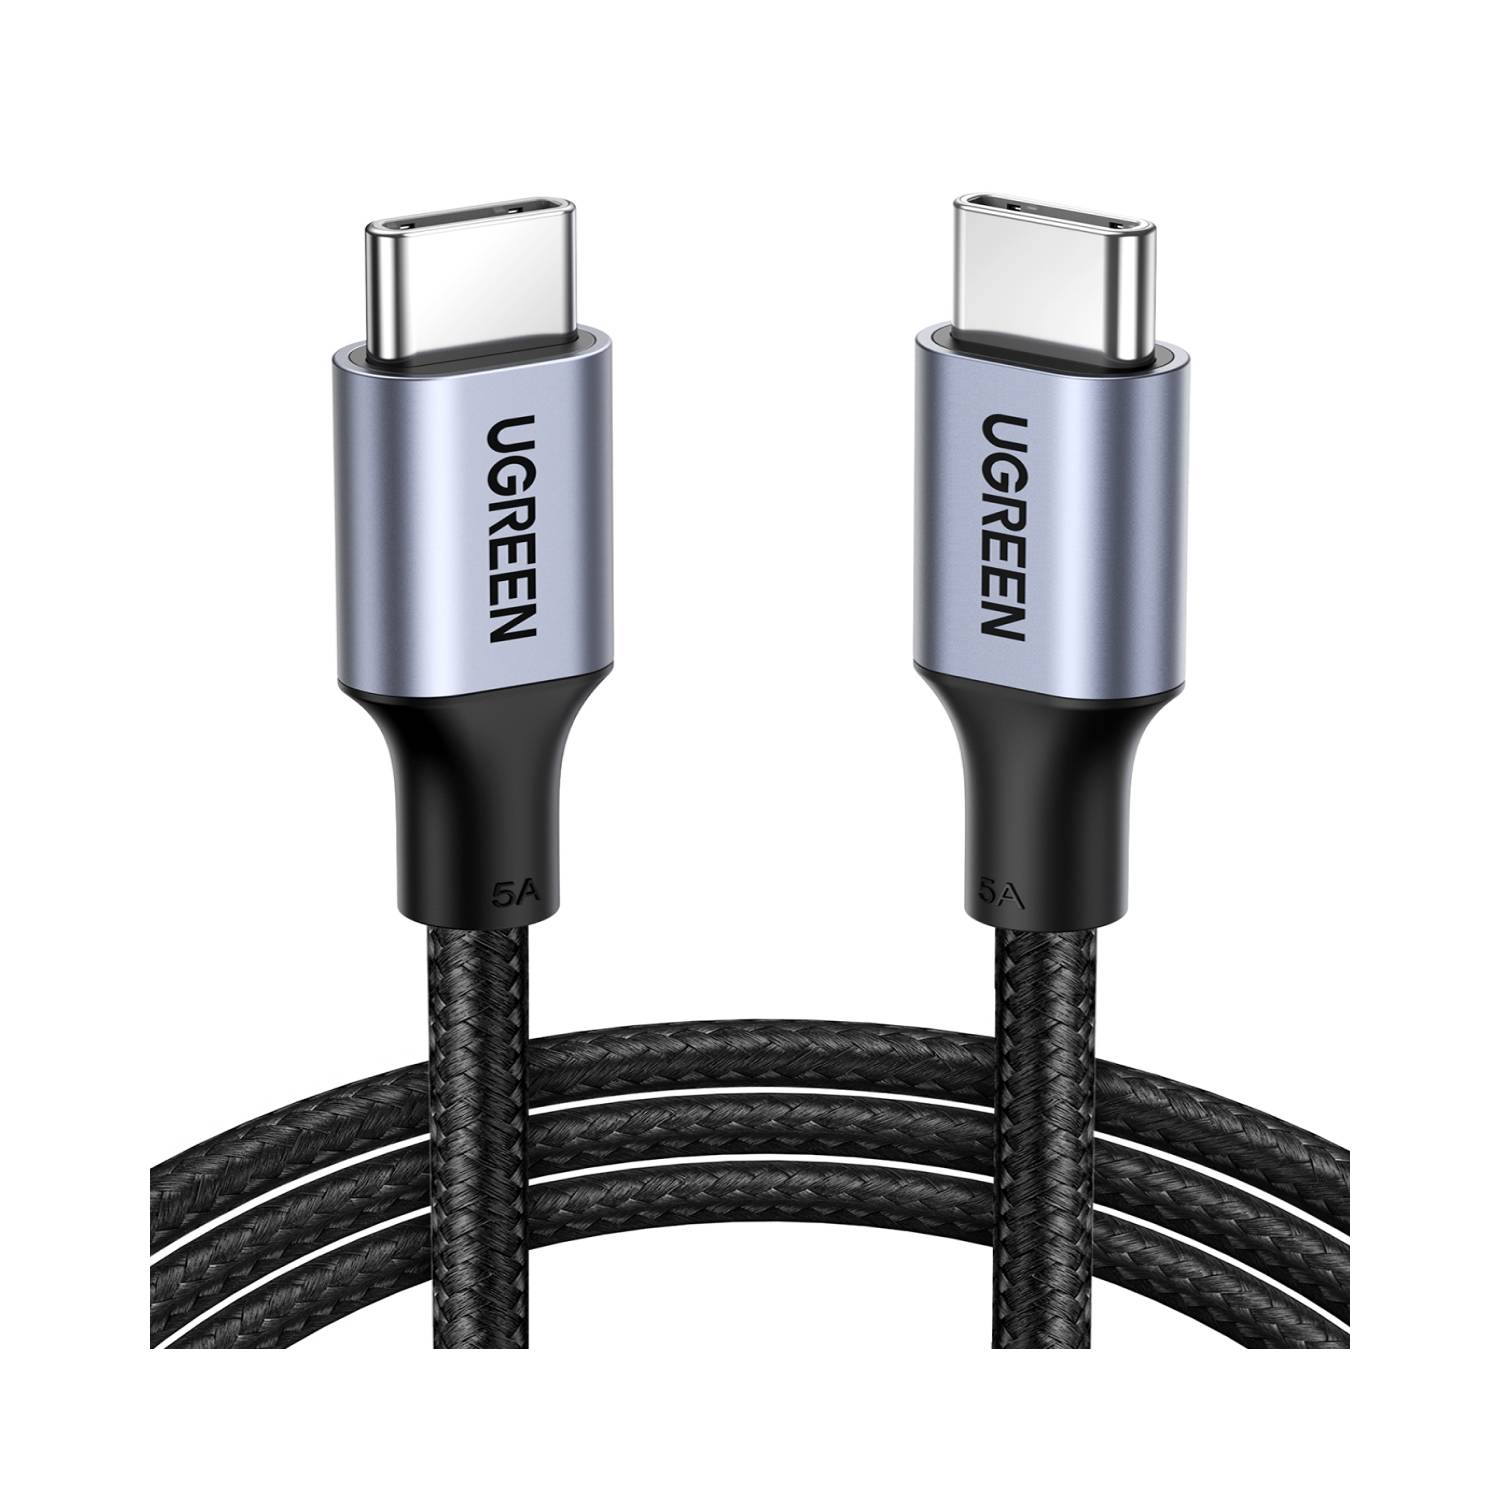 Cable de datos USB 2.0 - Micro USB